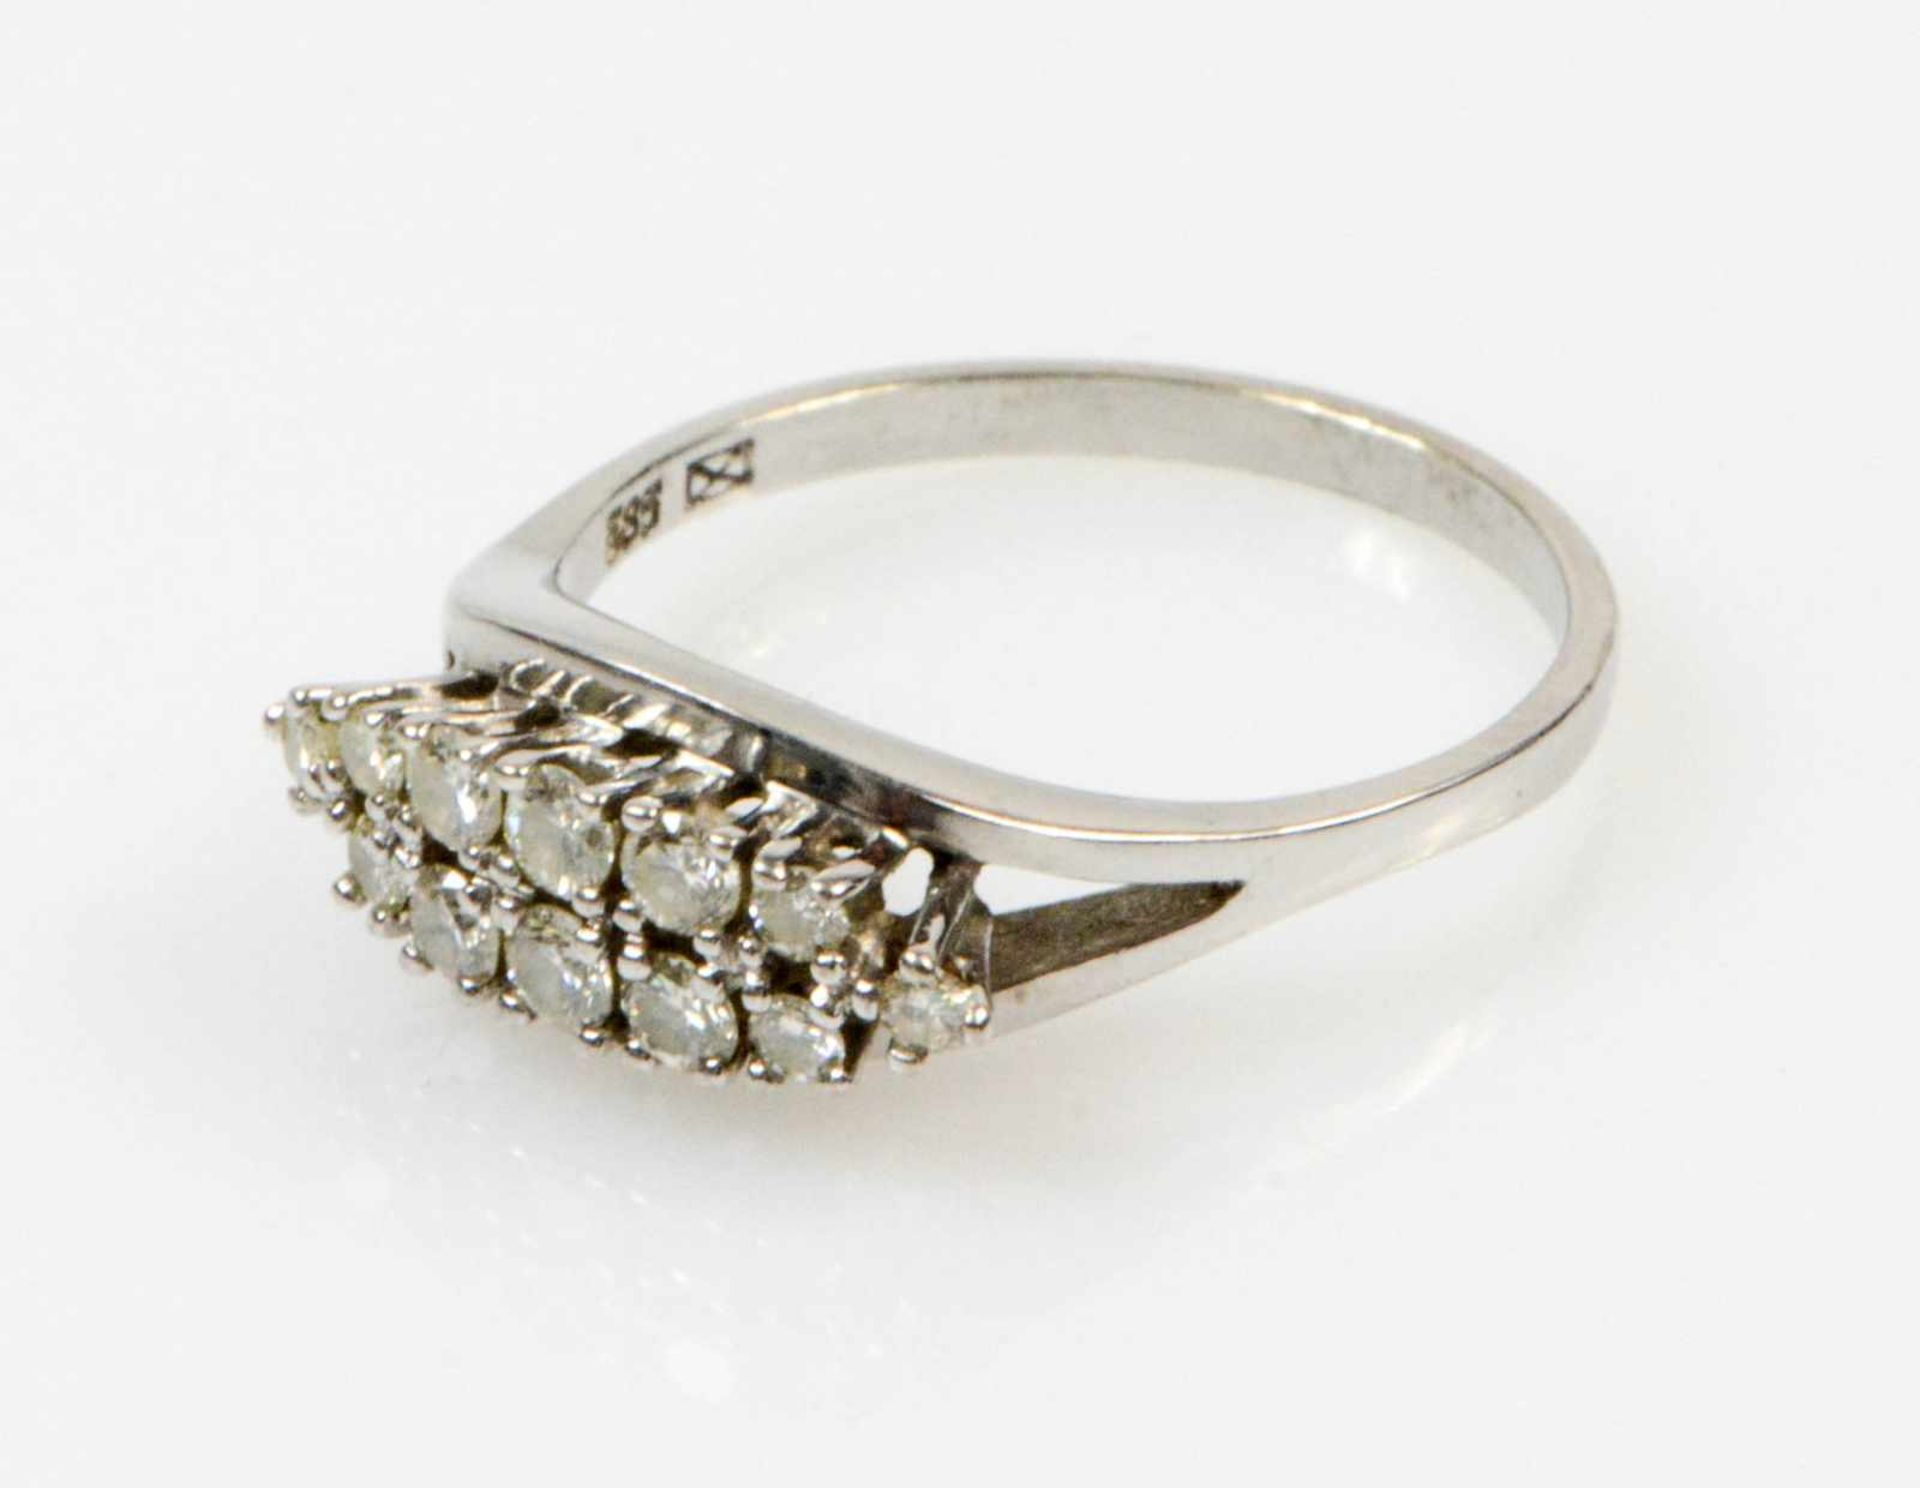 Damenring 585 Weißgold, besetzt mit 12 Diamanten, zusammen 0,51 ct, if cr, Ringdurchmesser 19 mm, - Bild 2 aus 2